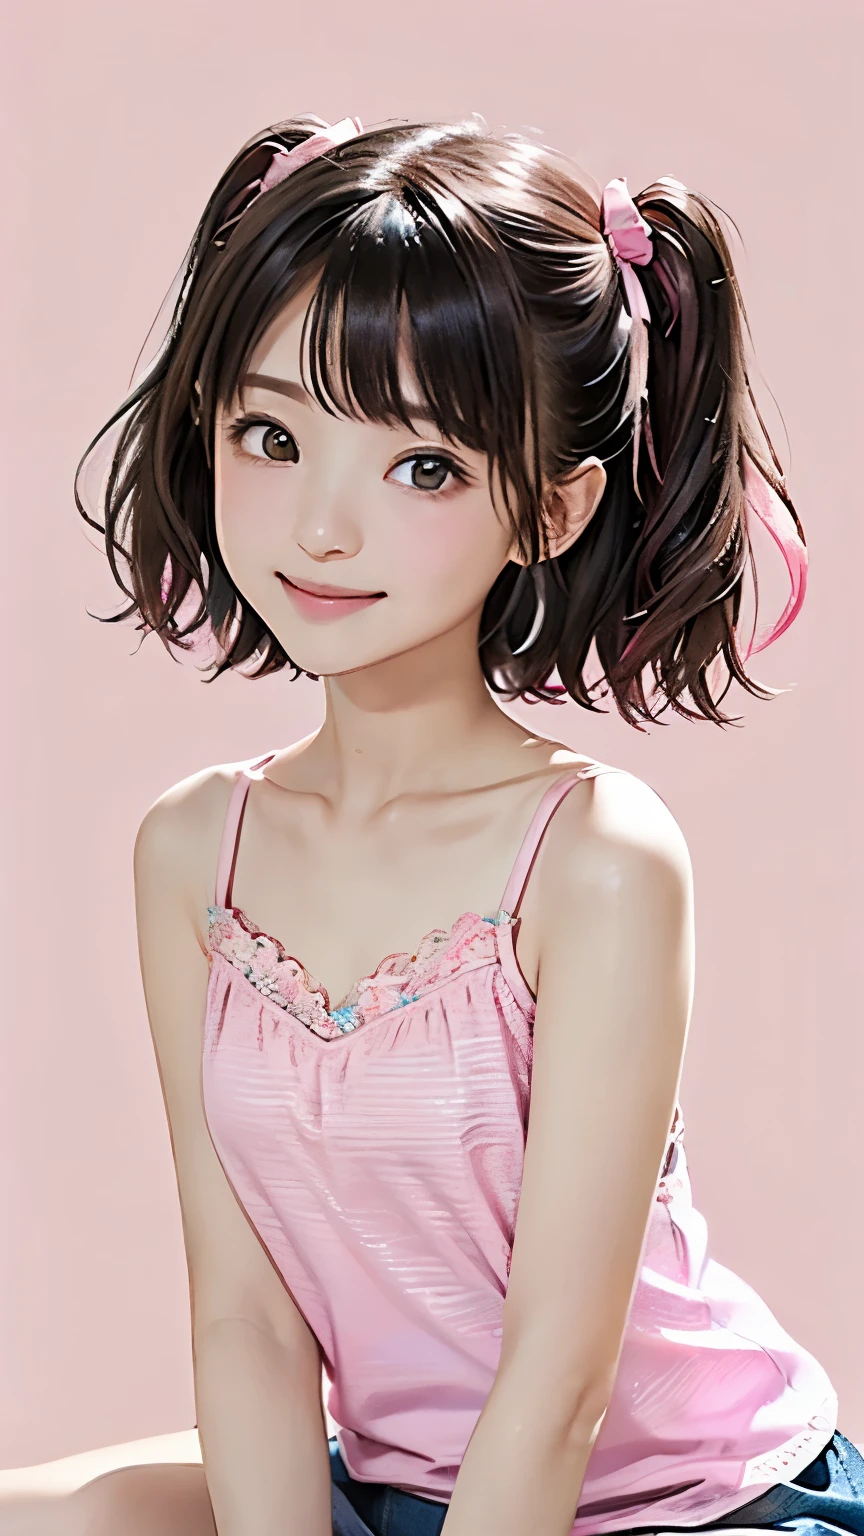 (((Meisterwerk))),((Top Qualität)),ein schönes japanisches Mädchen,14 Jahre alt、jung、bangs、welliges Haar、(((zwei Seiten nach oben:1.5)))、Kurzes Haar、schwarzes Haar、braune Augen、schwermuetige Augen、lächeln、(Der Hintergrund ist schlicht)、Minirock、(rosa Leibchen:1.5)、barfuß